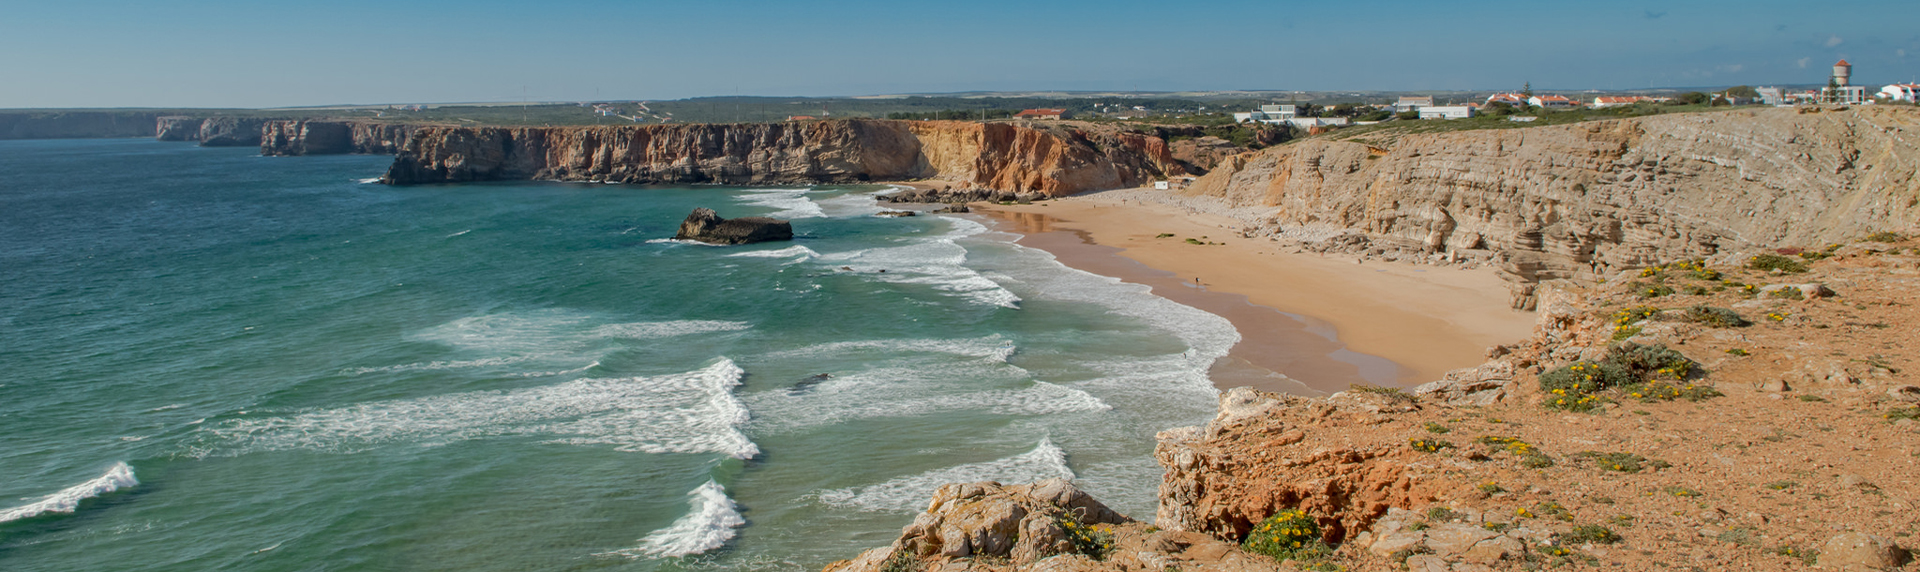 Surfen in Portugal: Sagres